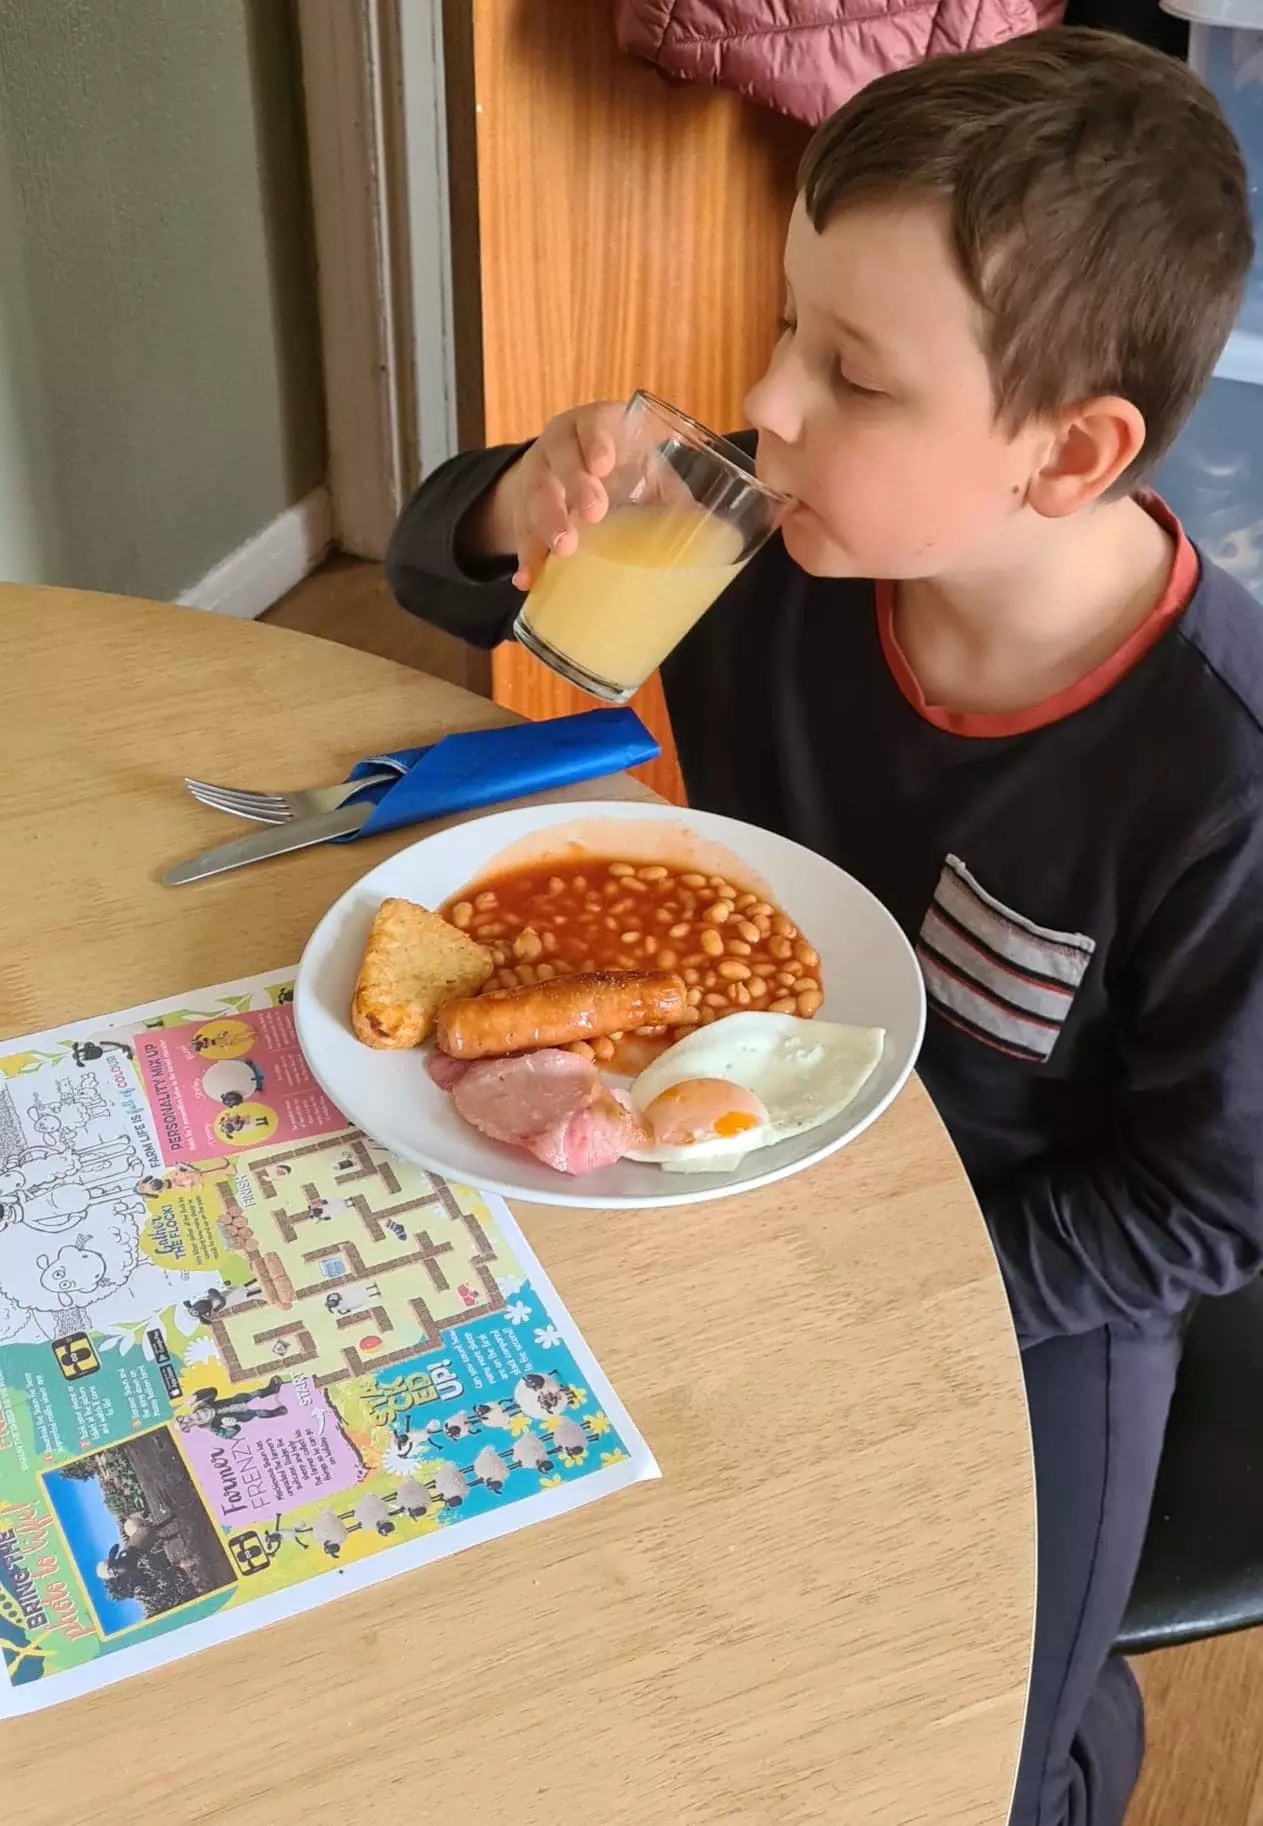 Josh enjoying his breakfast.